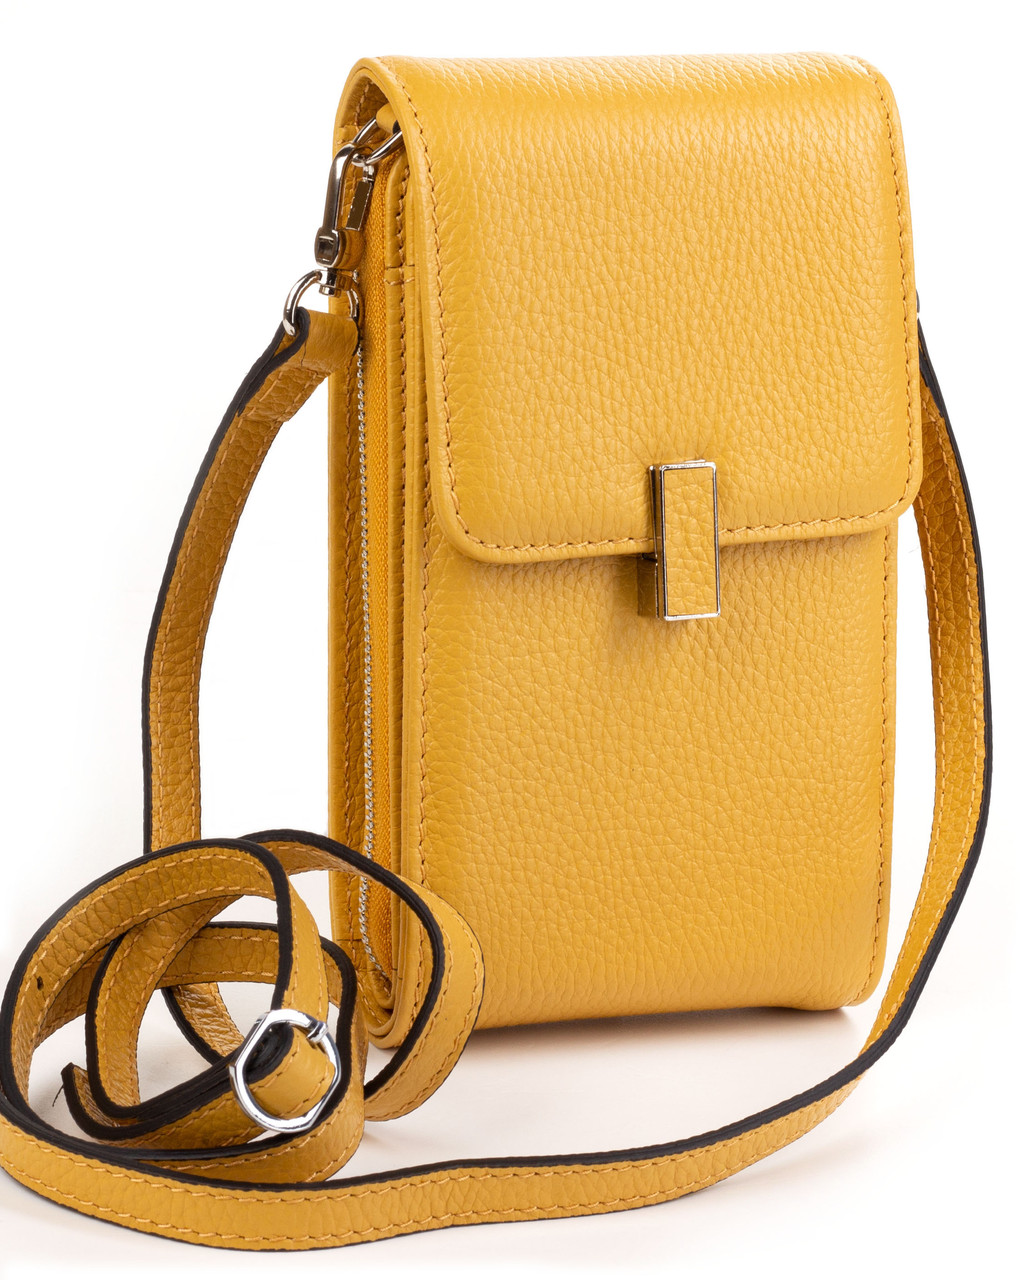 Женская кожаная сумка кошелек на шею Eminsa 40241-37-13 с отделением для телефона желтая